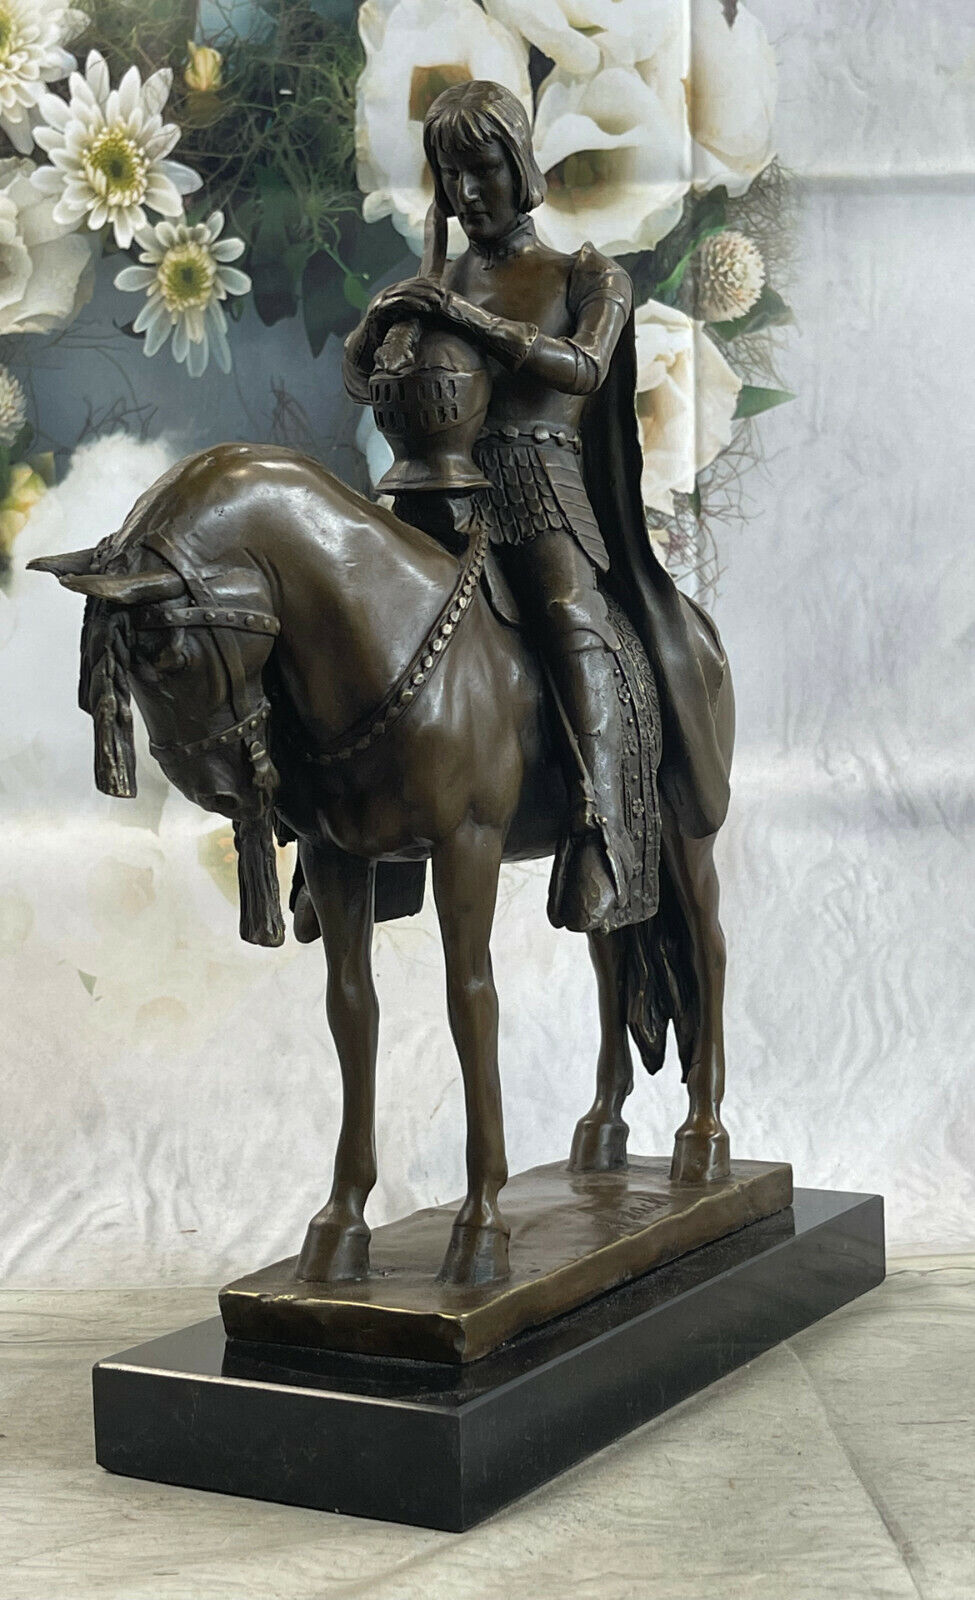 New King Arthur On Horse Figurine Sculpture Bronze European Made Home Art